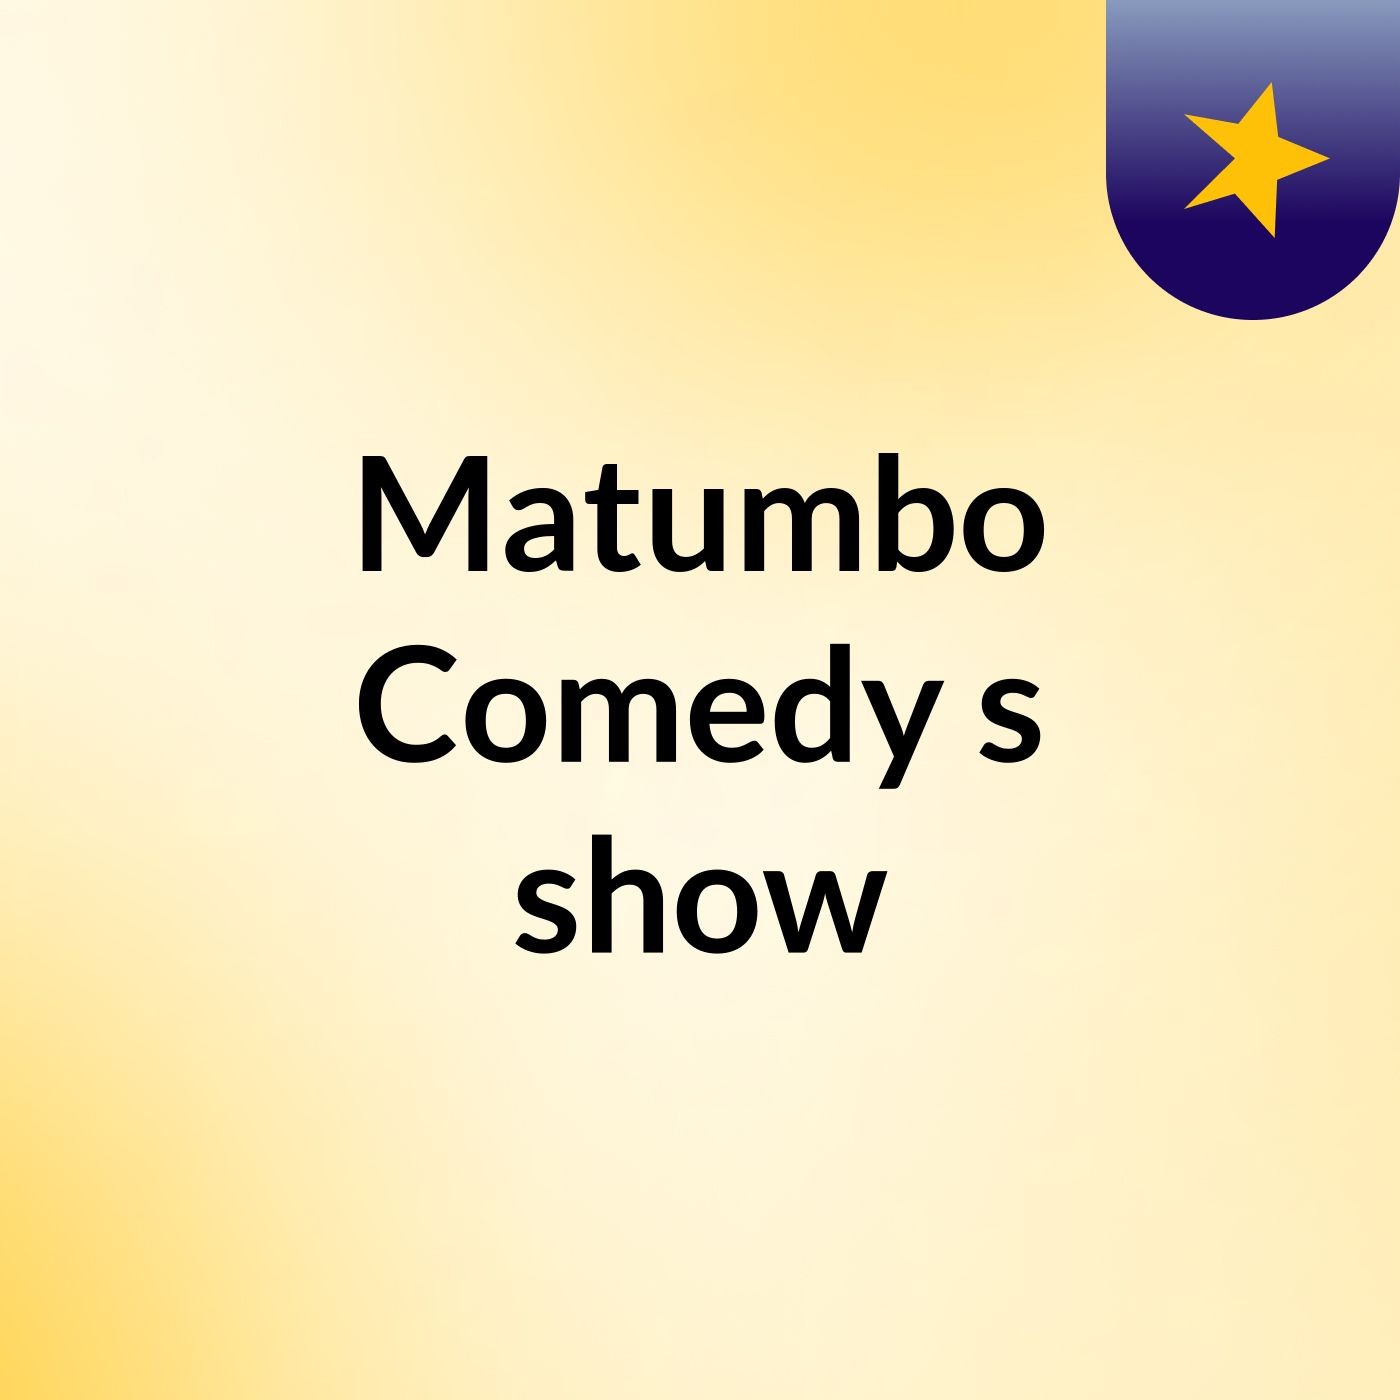 Matumbo Comedy's show